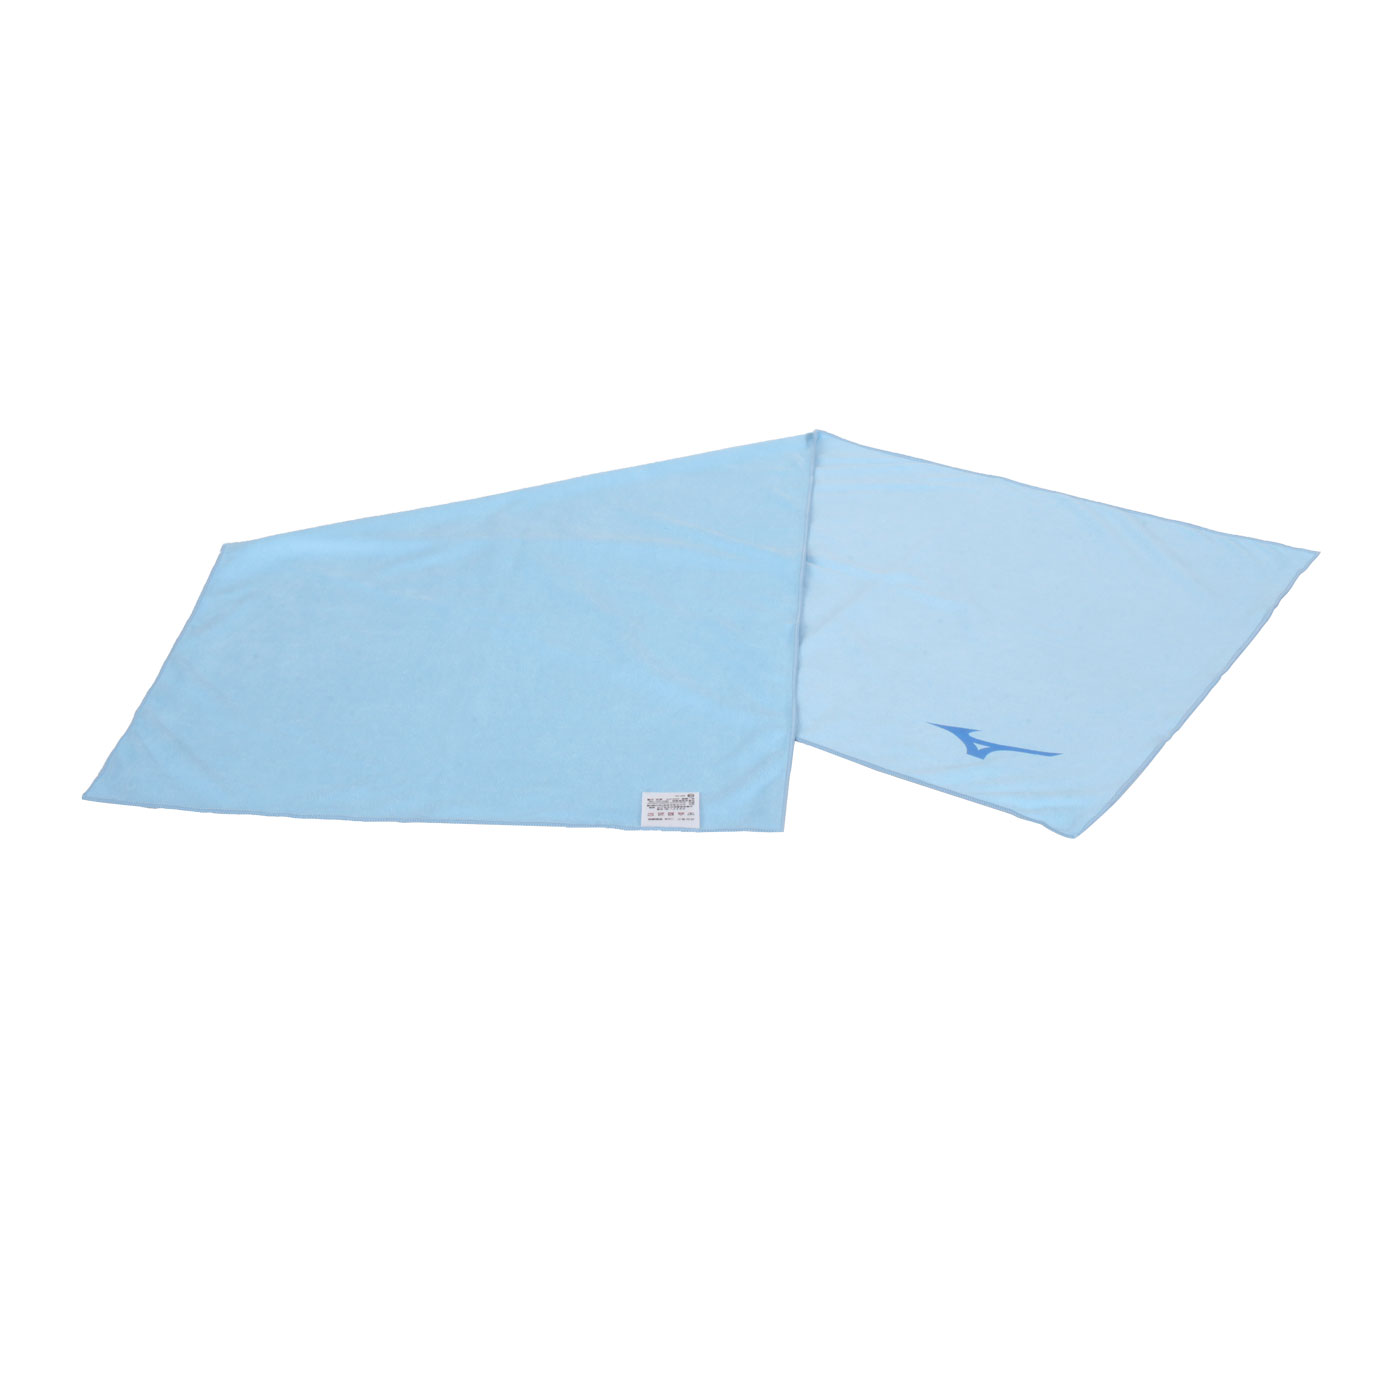 MIZUNO 吸水巾(37*90cm)  SWIM 32TYA31021 - 水藍